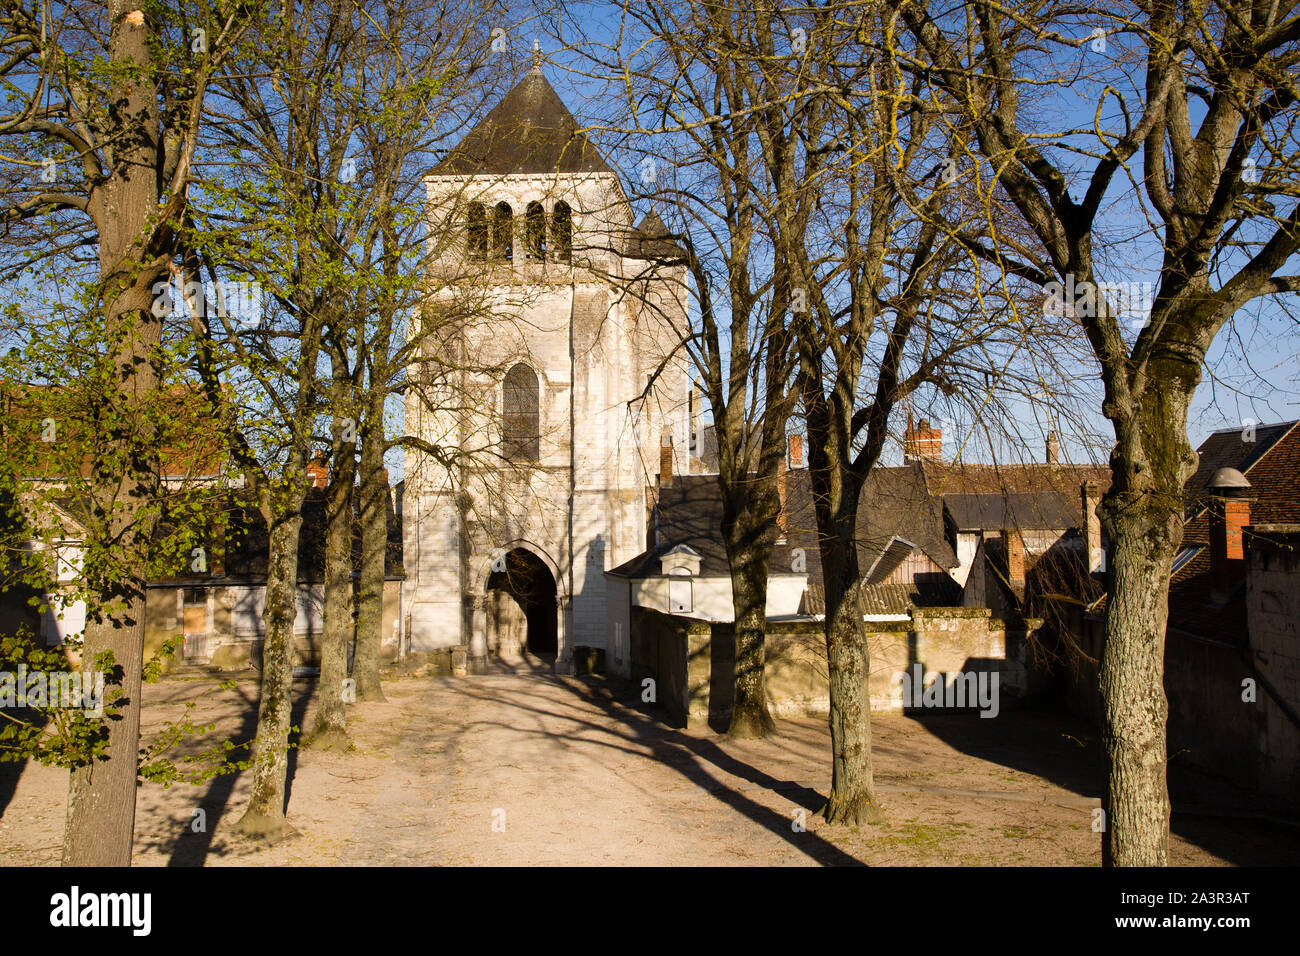 Church, Saint-Aignan sur Cher, France Stock Photo